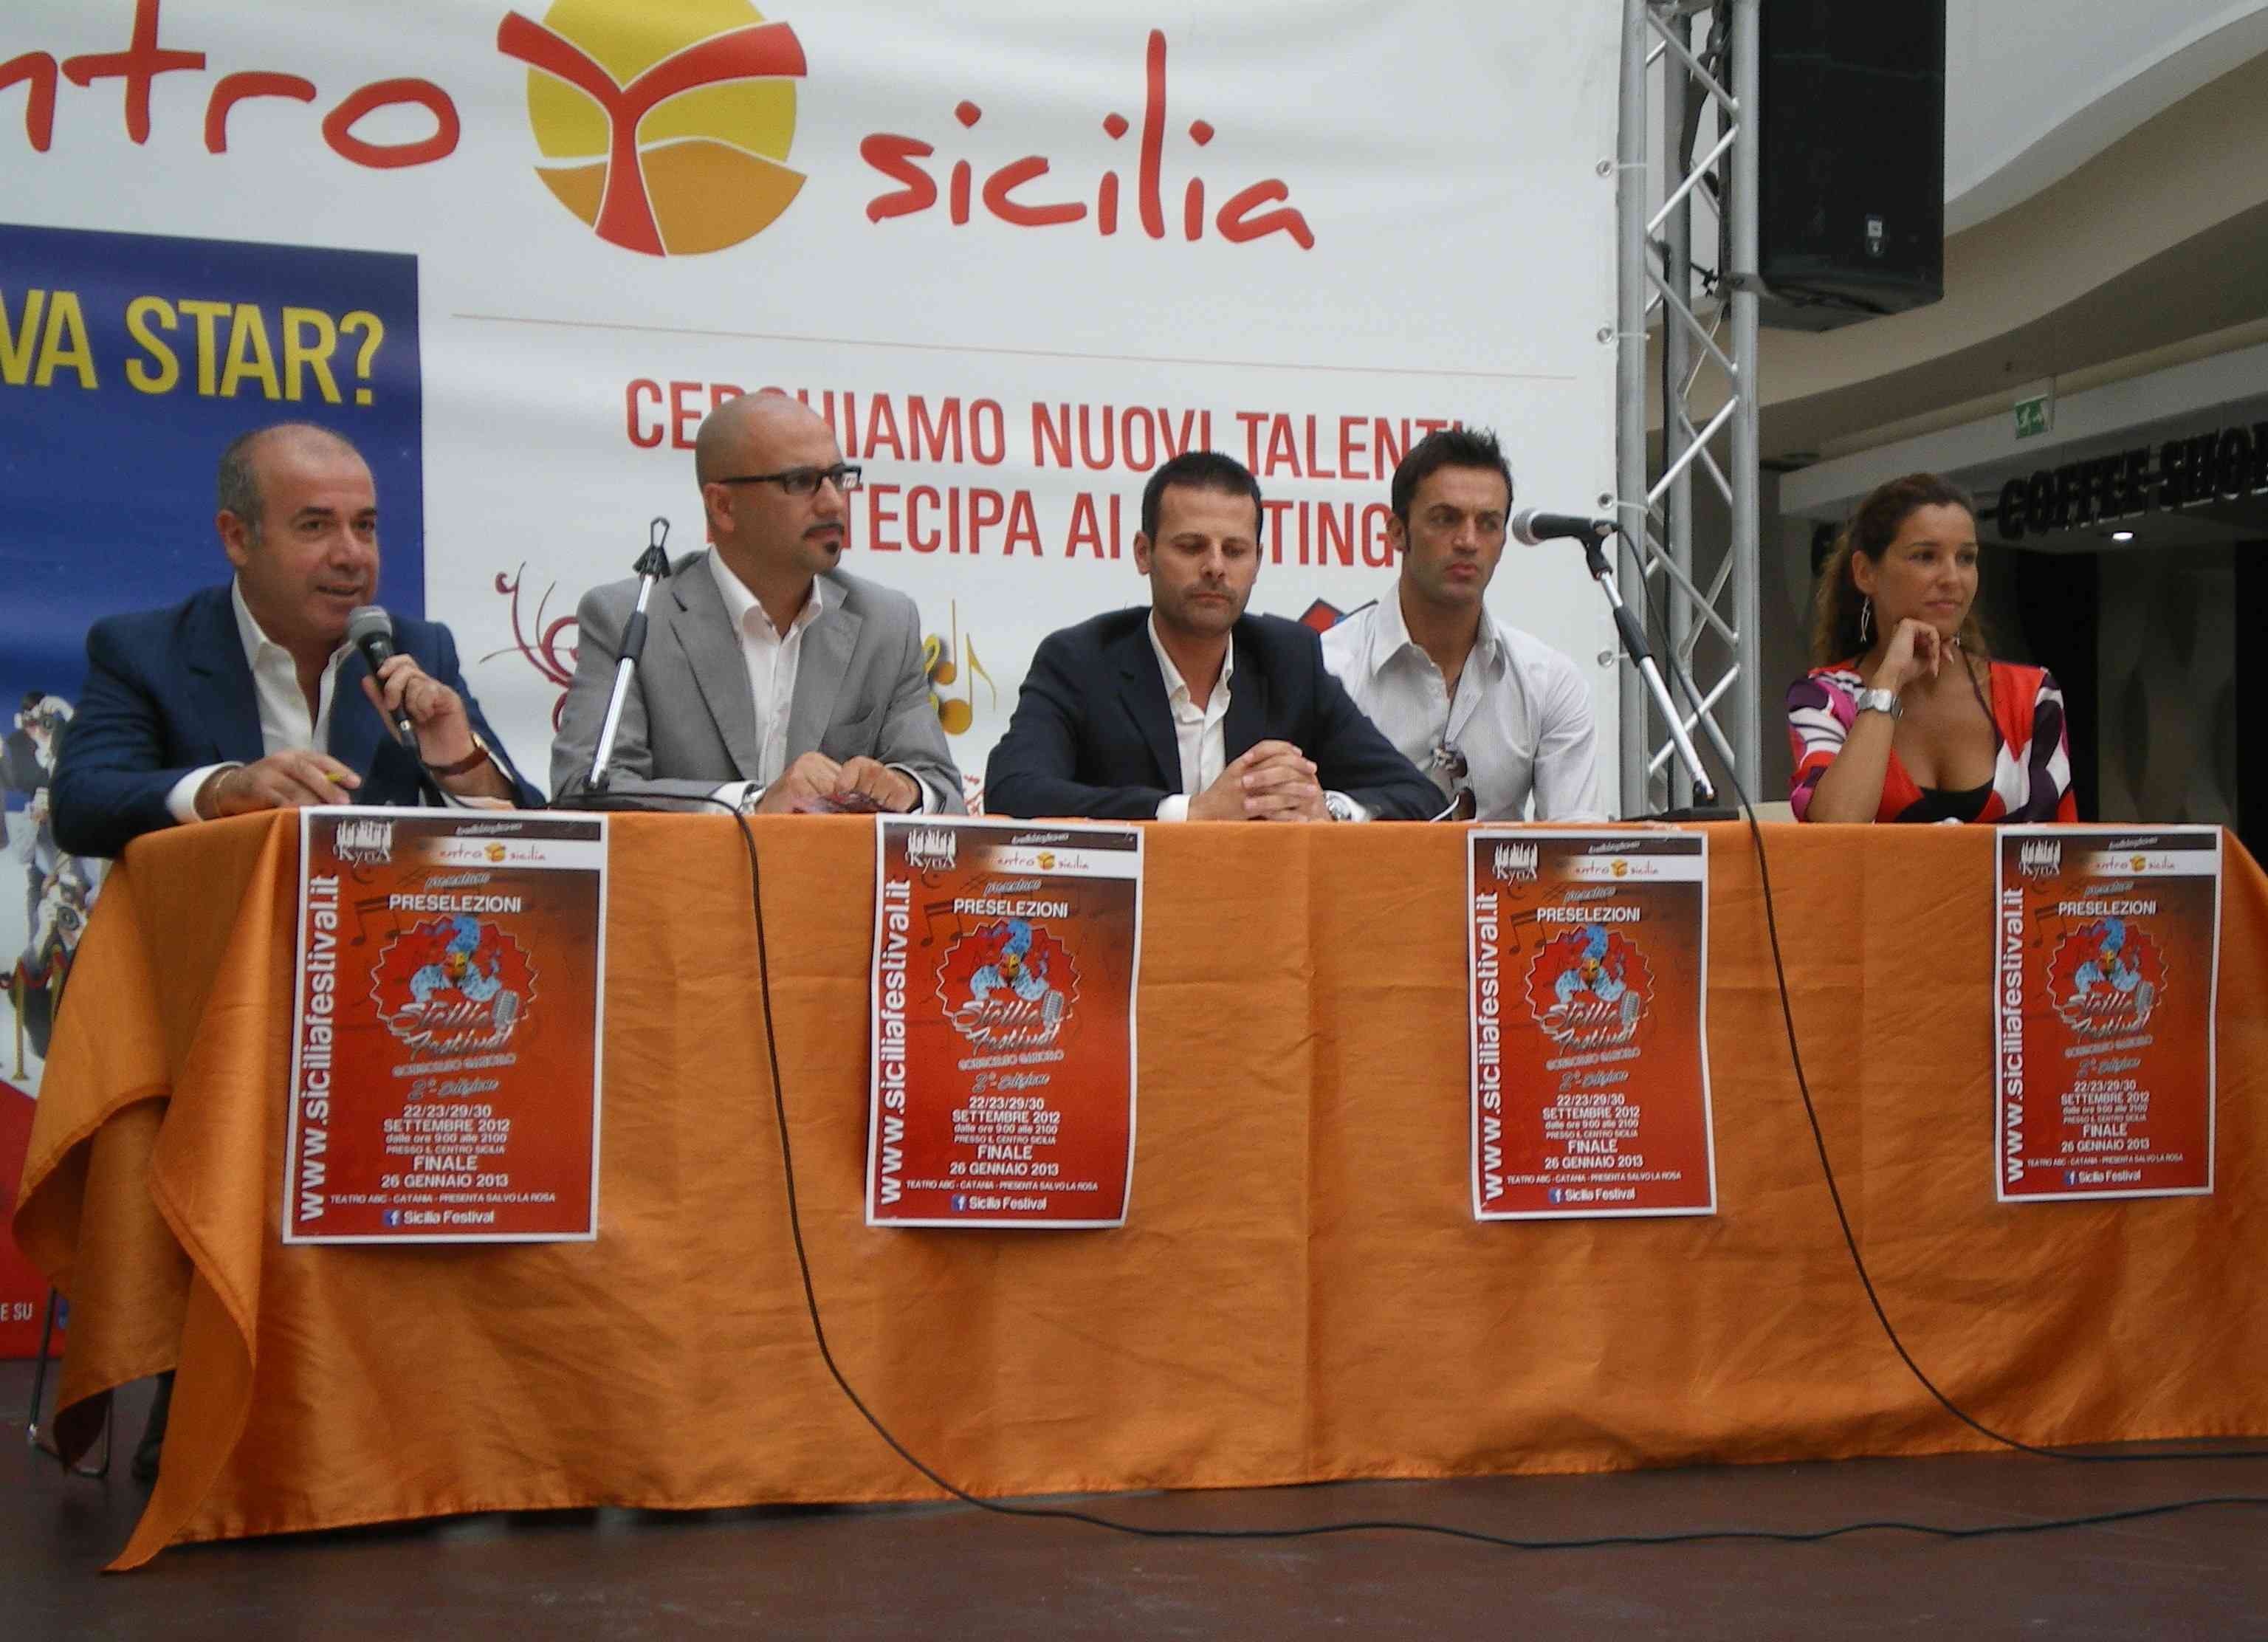 Eventi culturali. Presentazione Sicilia Festival II edizione